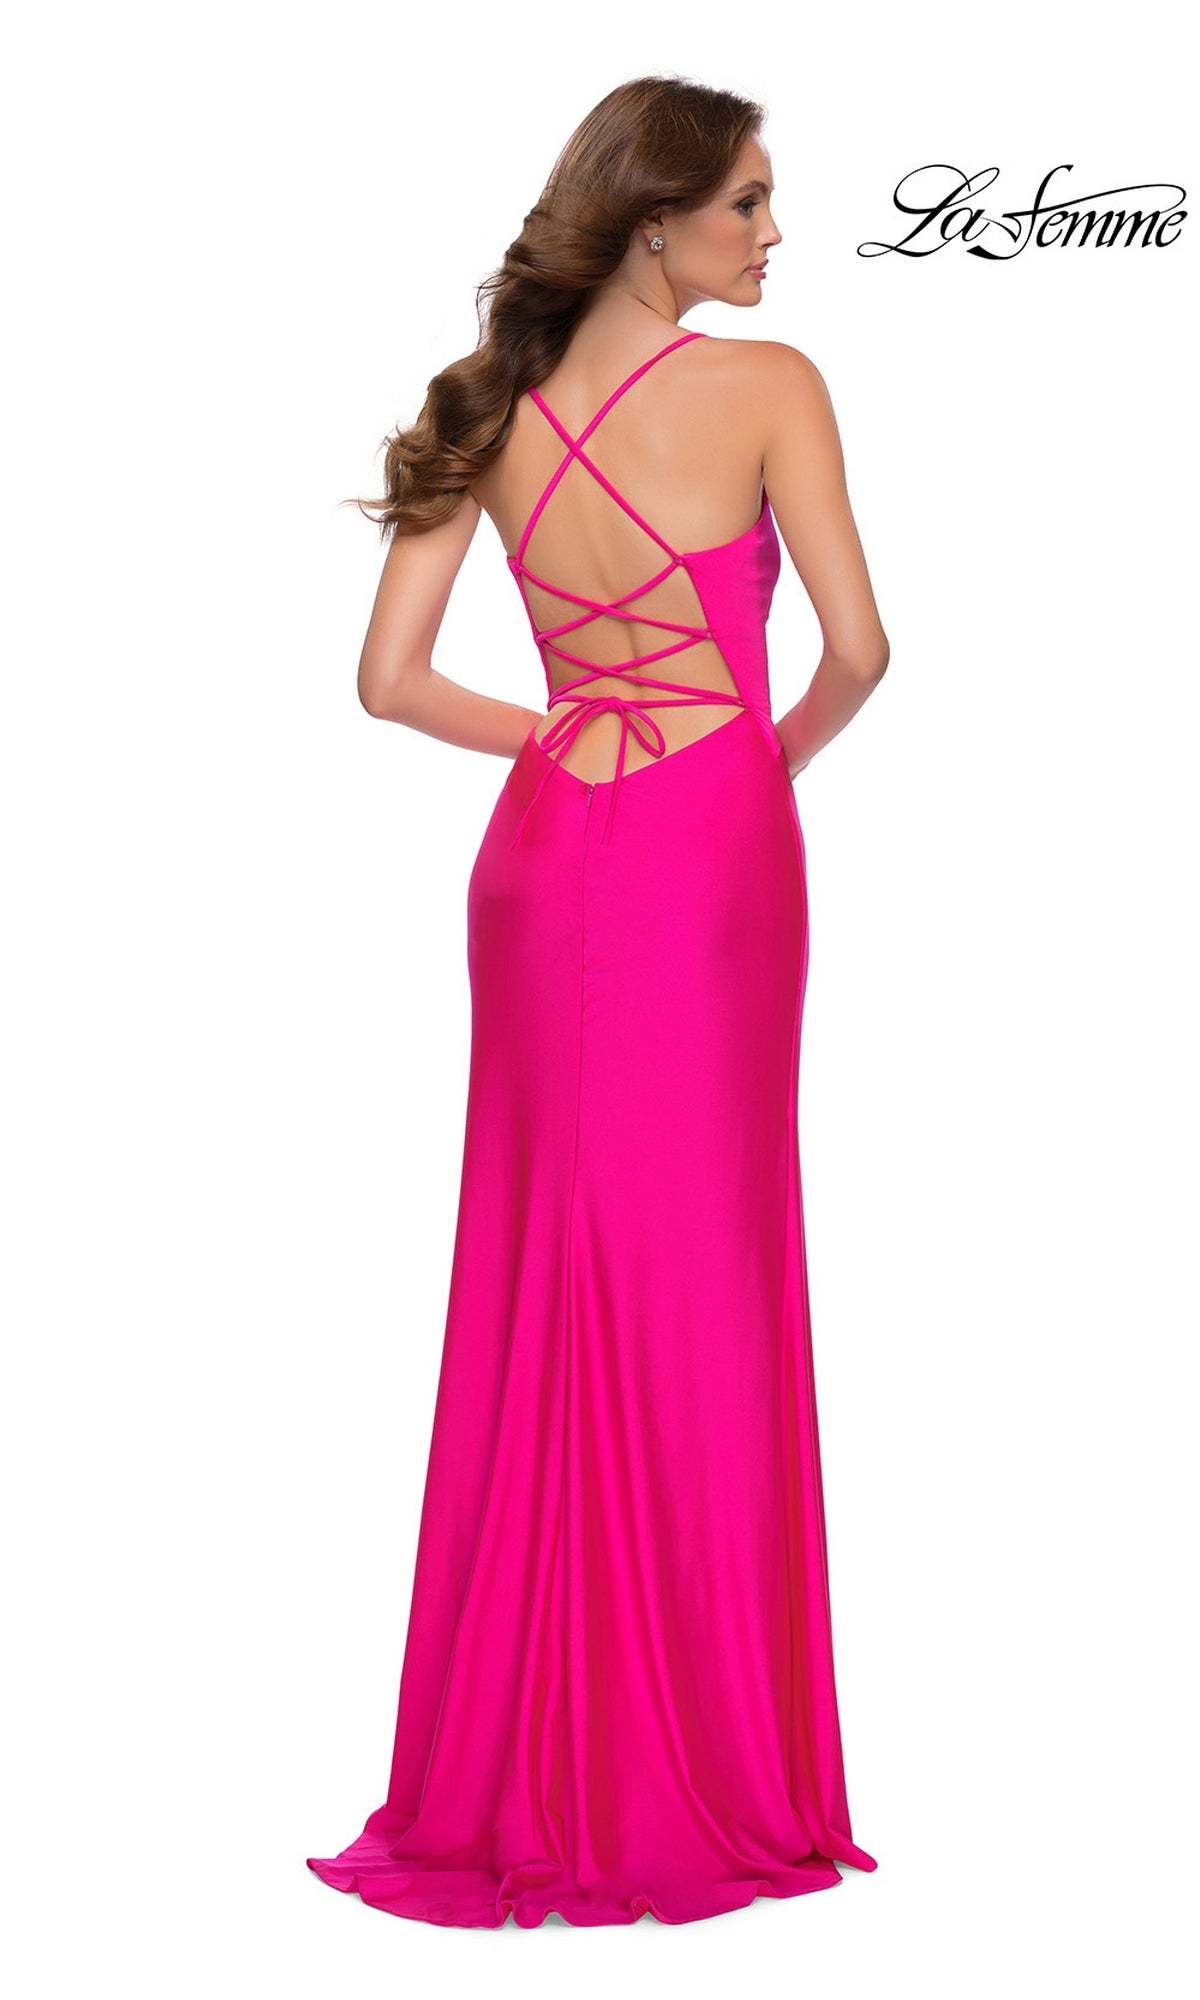 La Femme Hot Pink Long Prom Dress 29870